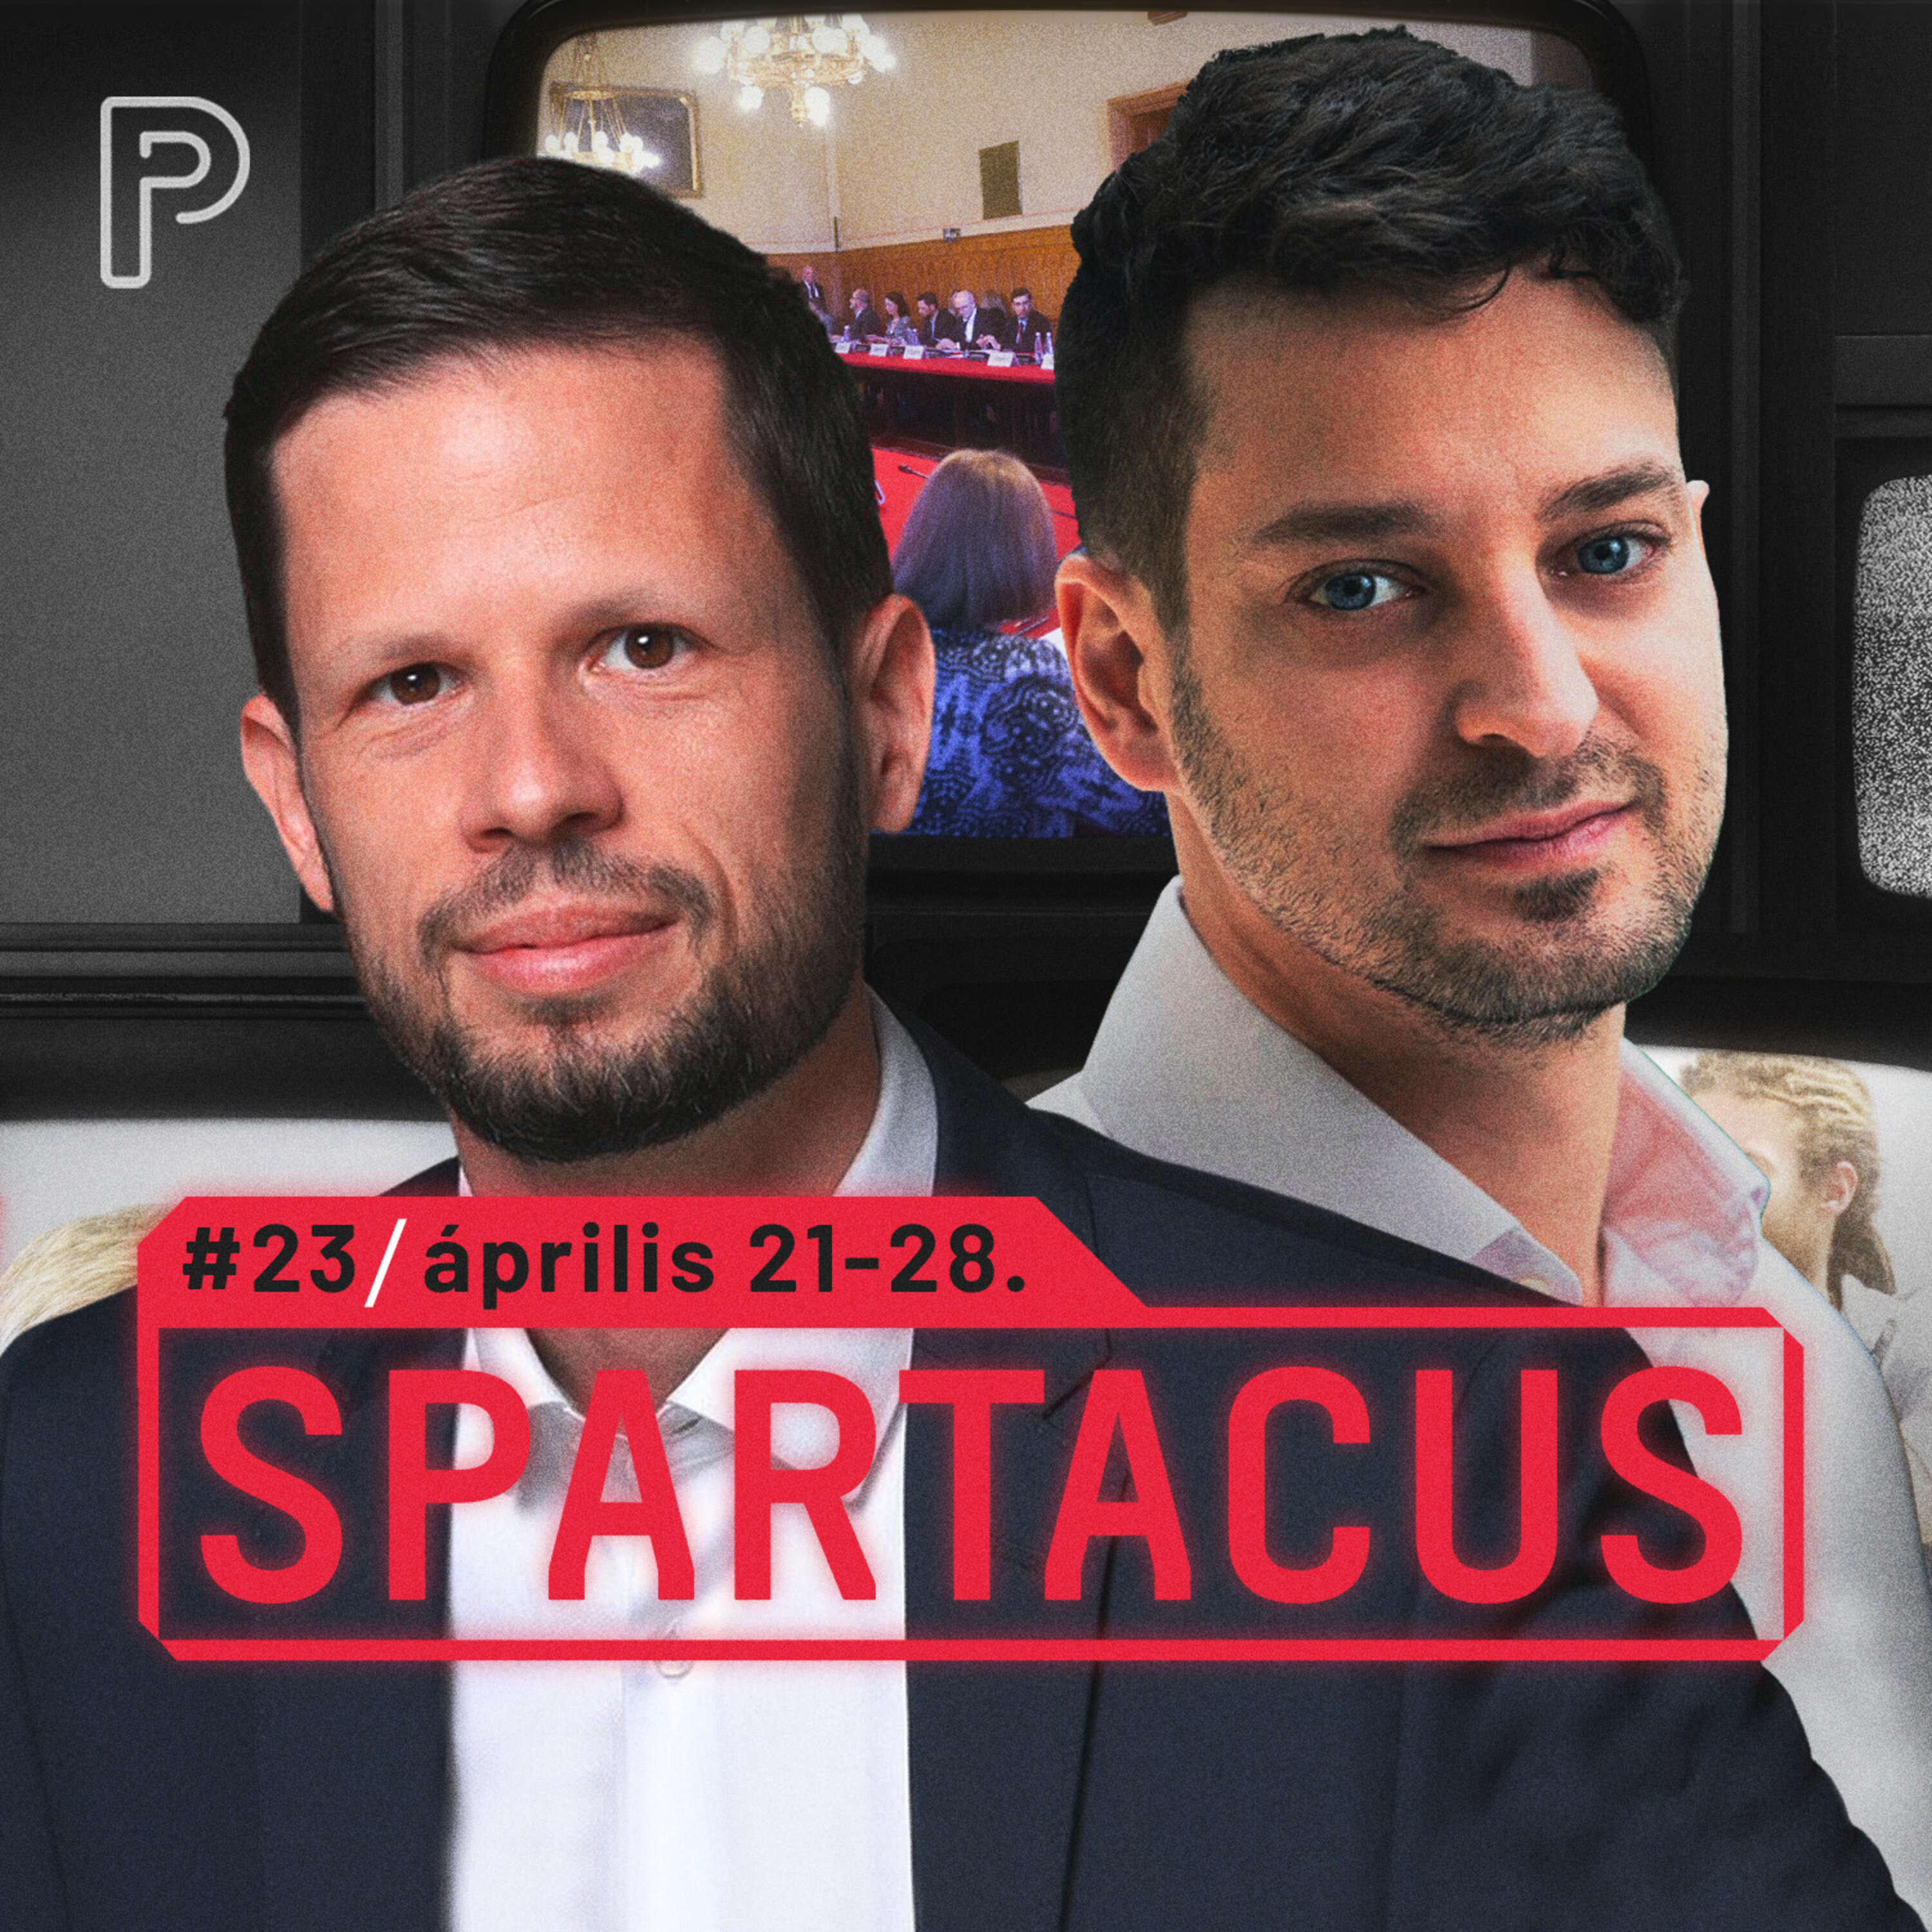 Zöldpártok vitája, elzárt gázcsapok | Spartacus #23